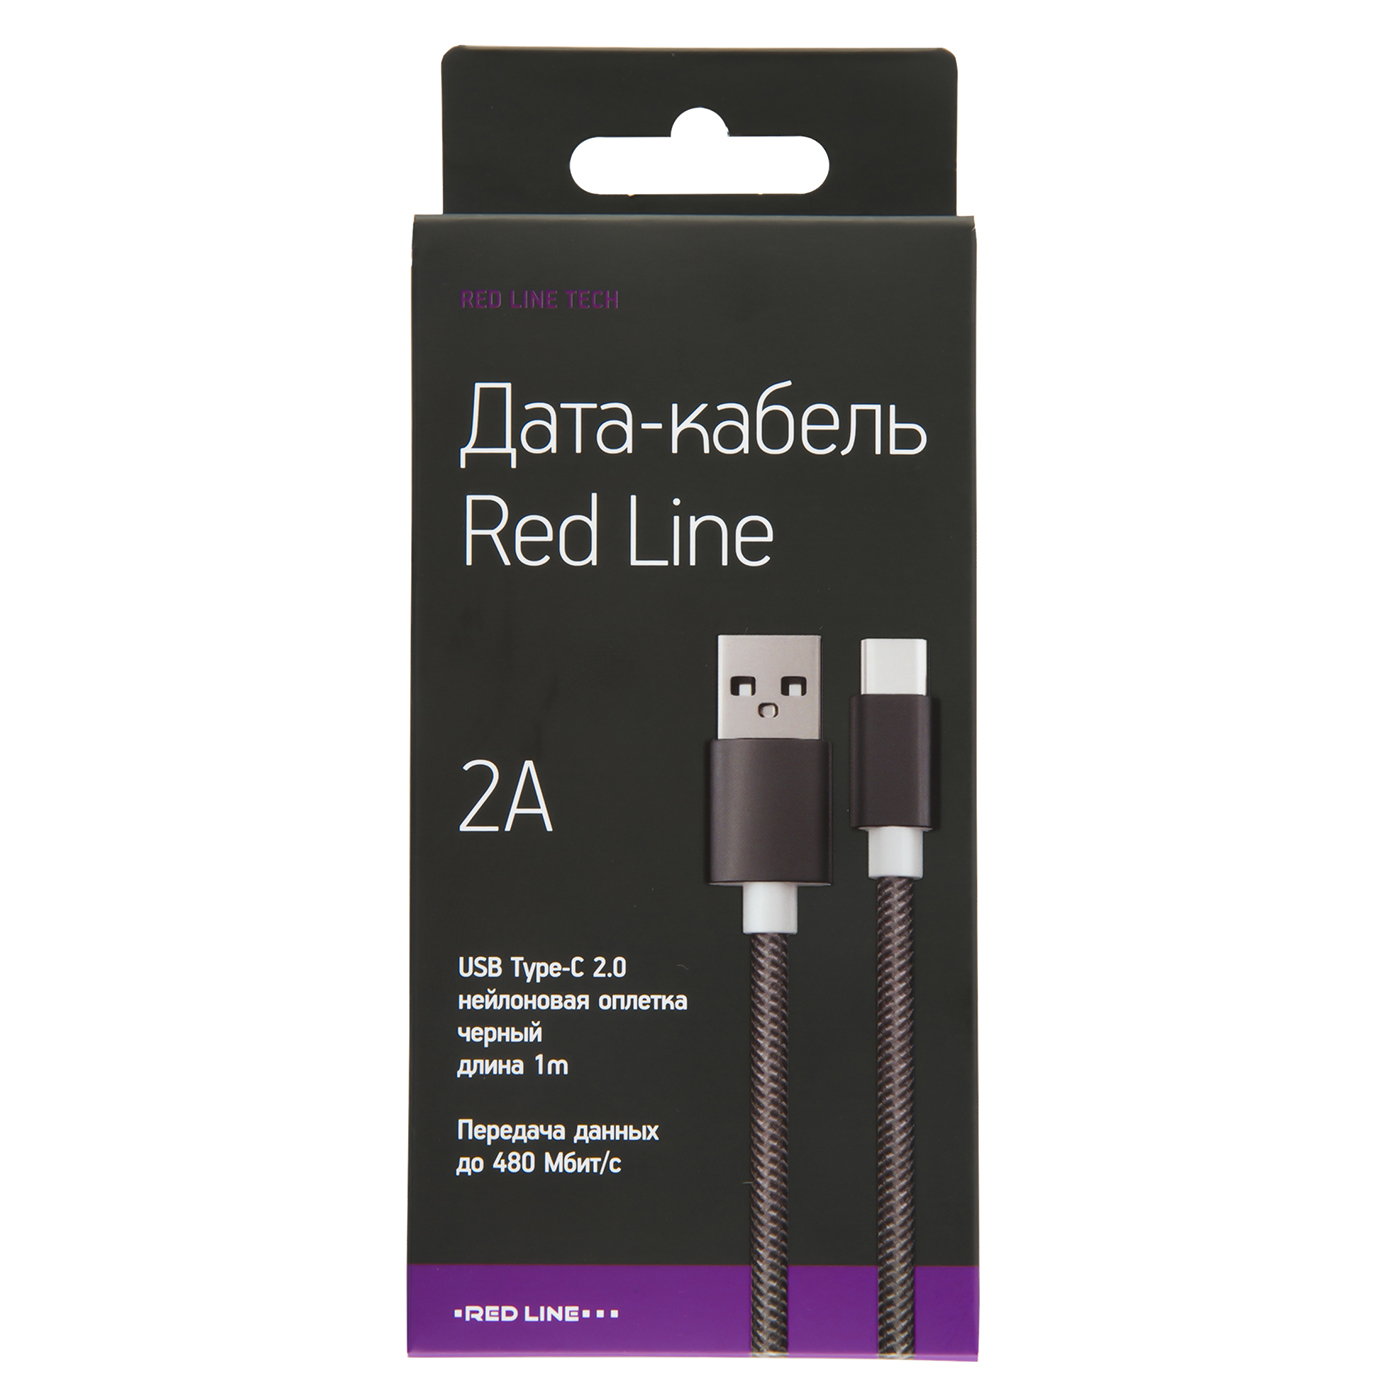 Кабель red line. Дата-кабель Red line USB - Type-c 2.0 нейлоновая Оплетка, серебристый. Red line Tech кабель Type-c. Дата-кабель Red line USB - Type-c 3.0 нейлоновая Оплетка, черный. Red line USB Type c 2.0 нейлон.